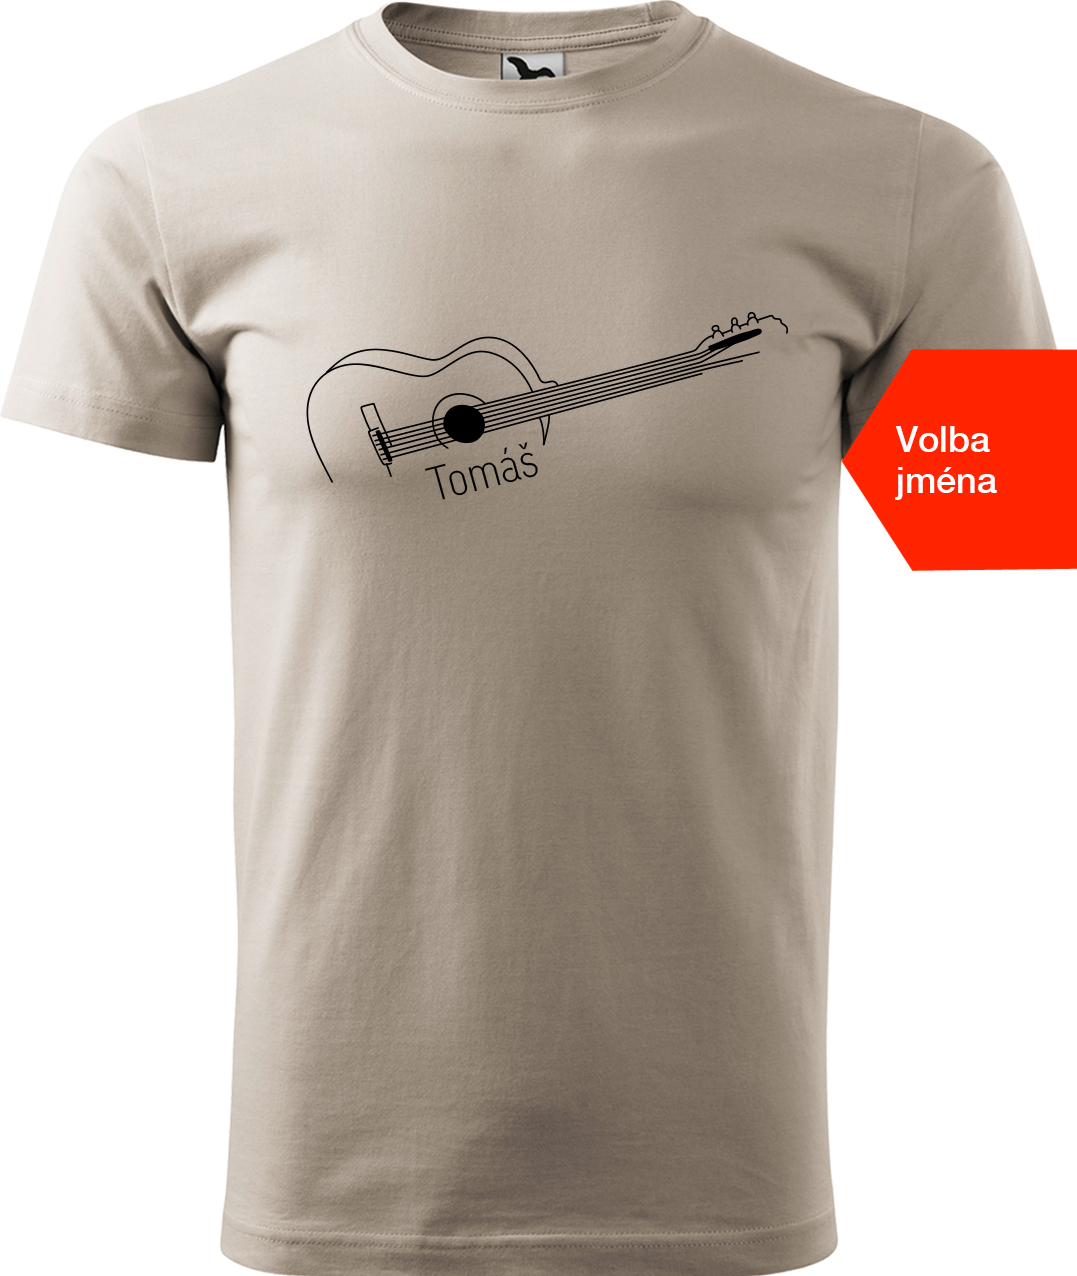 Pánské tričko s kytarou se jménem - Stylizovaná kytara Velikost: M, Barva: Ledově šedá (51), Střih: pánský